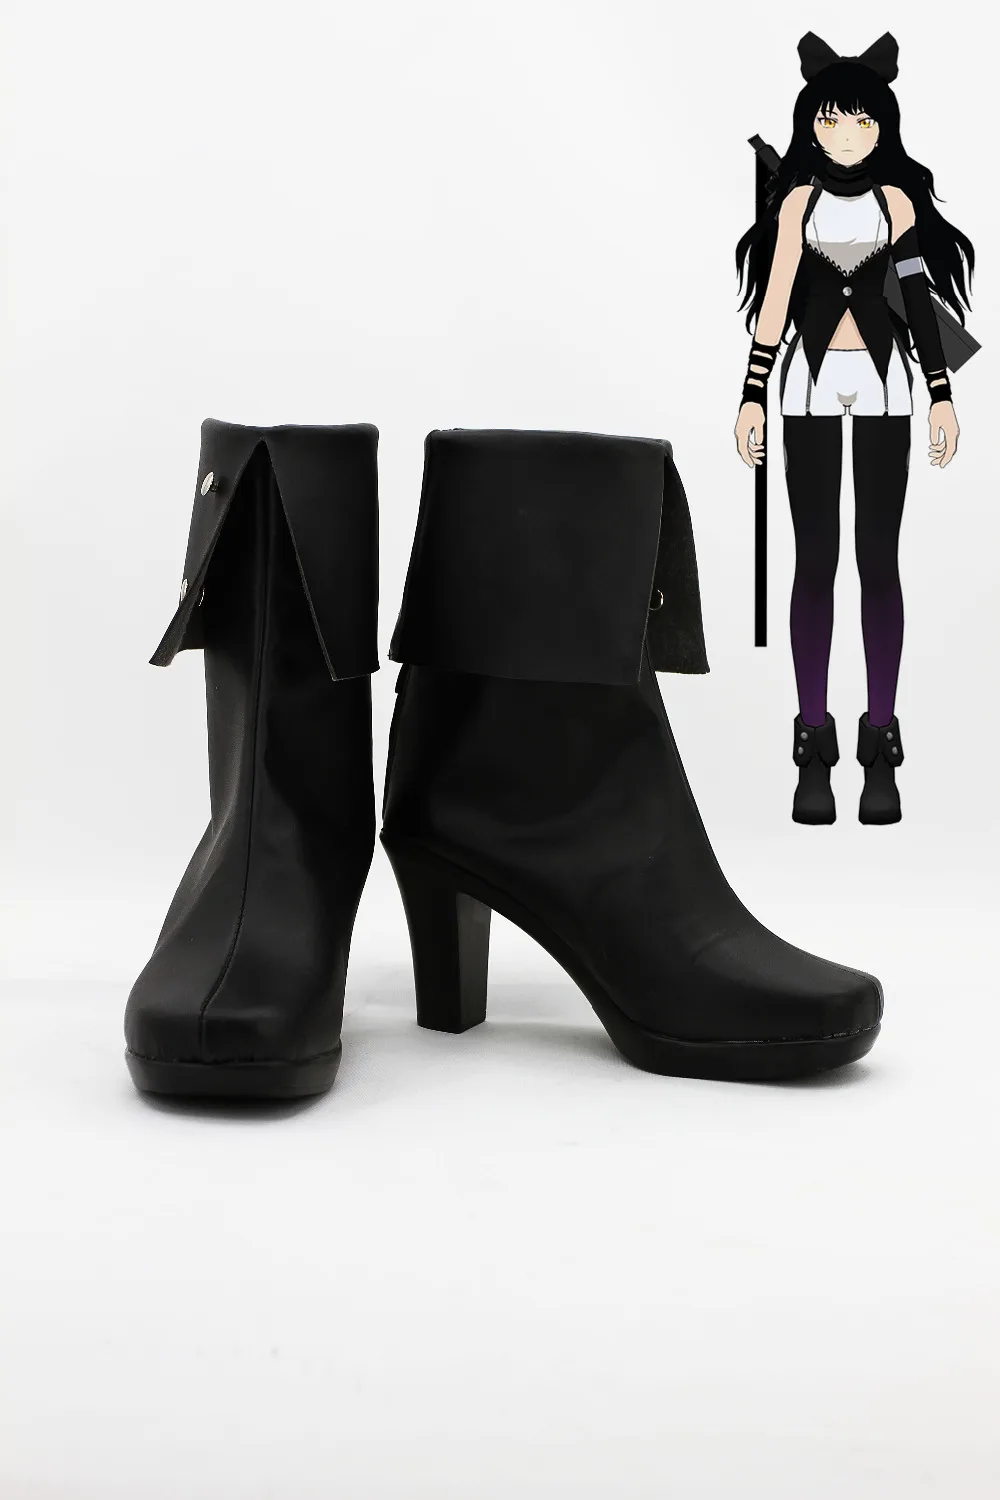 RWBY Блейк Белладонна обувь для маскарада в стиле аниме; ботинки черного цвета